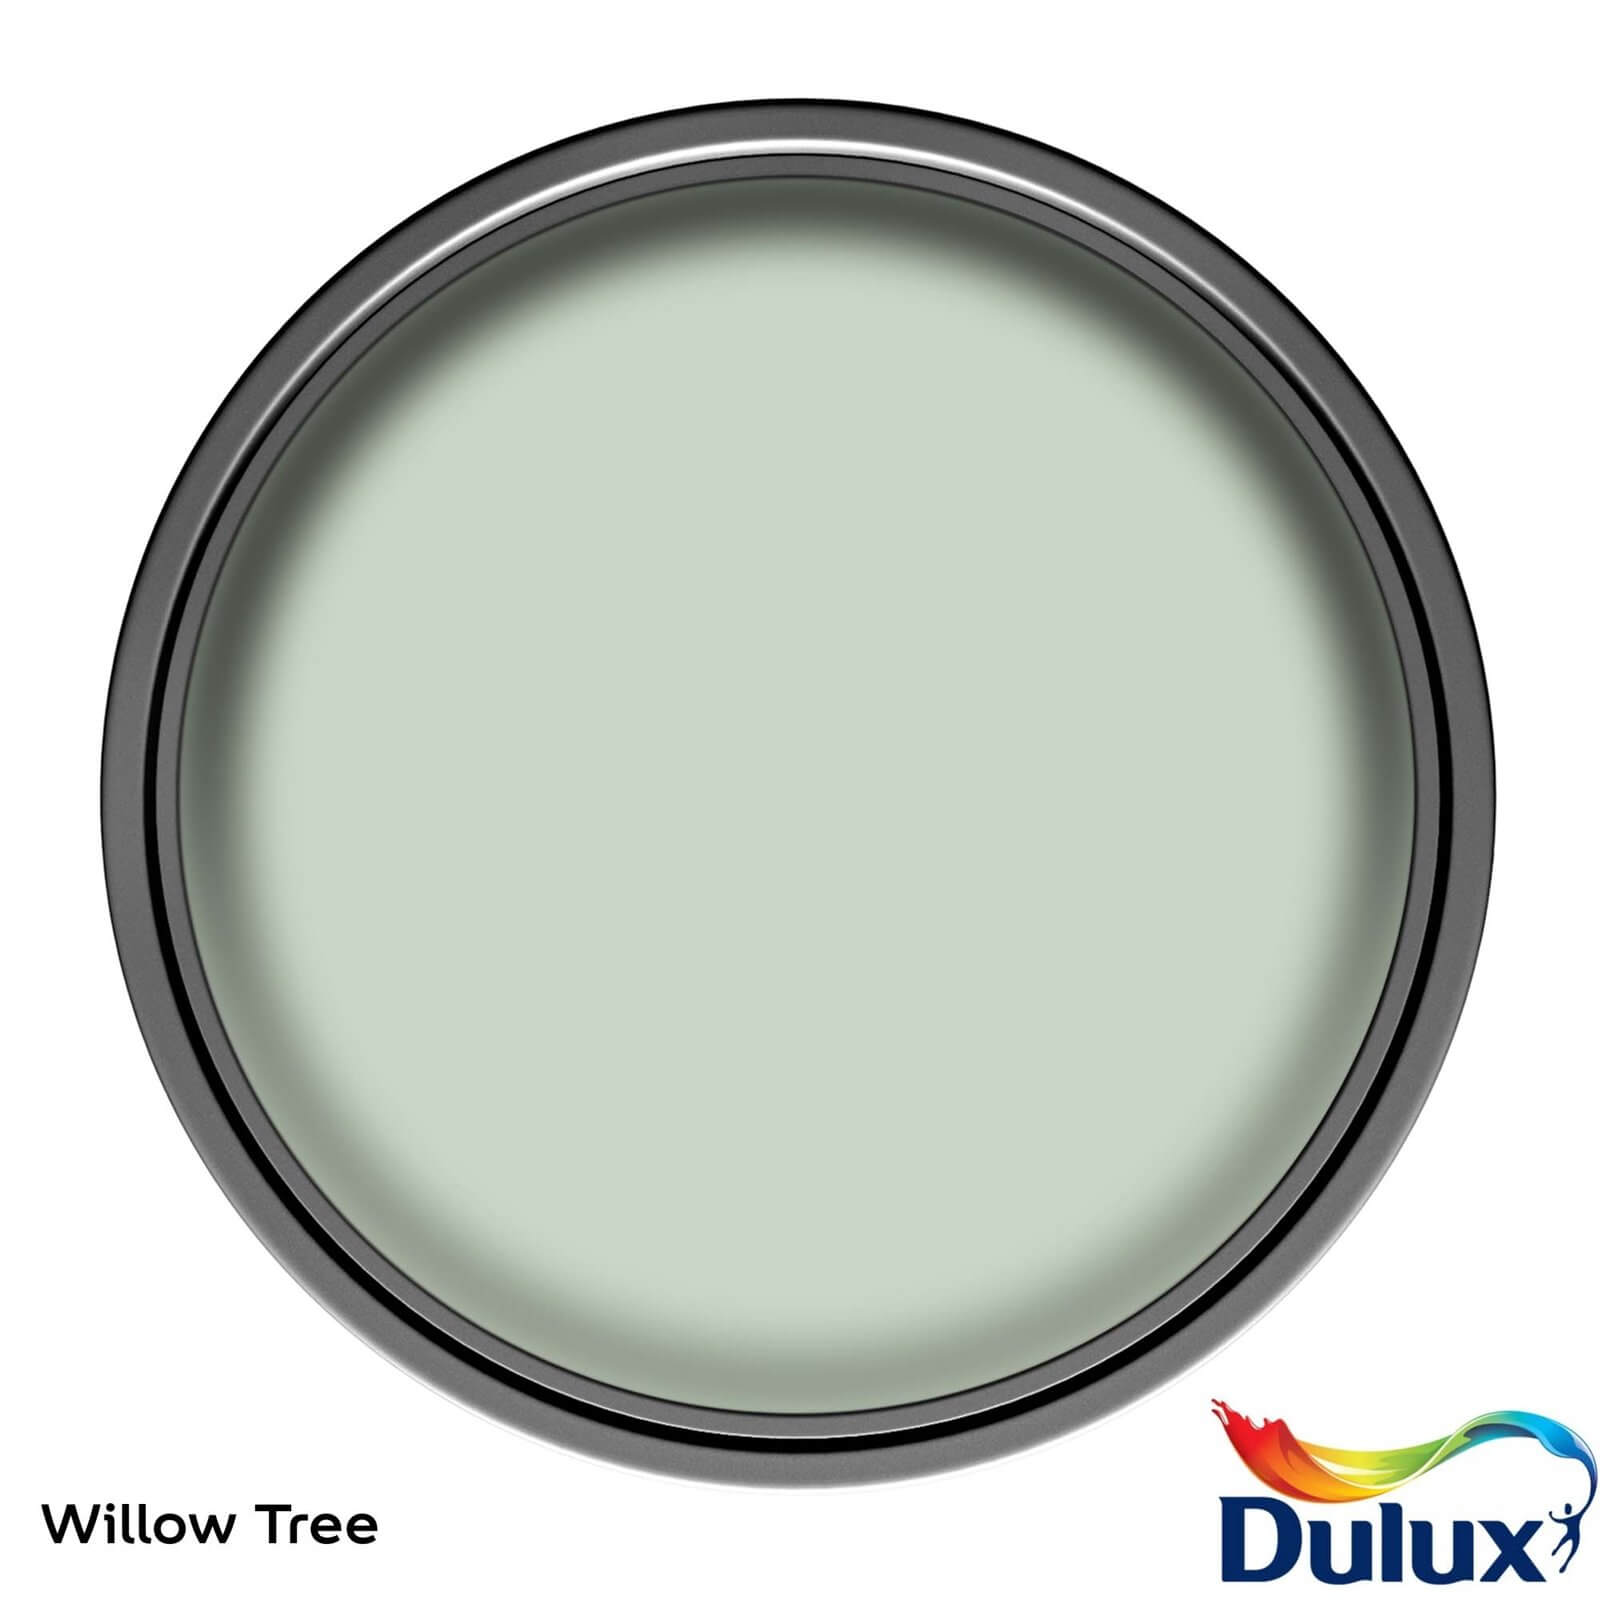 Dulux Easycare Washable & Tough Matt Paint Willow Tree - 2.5L